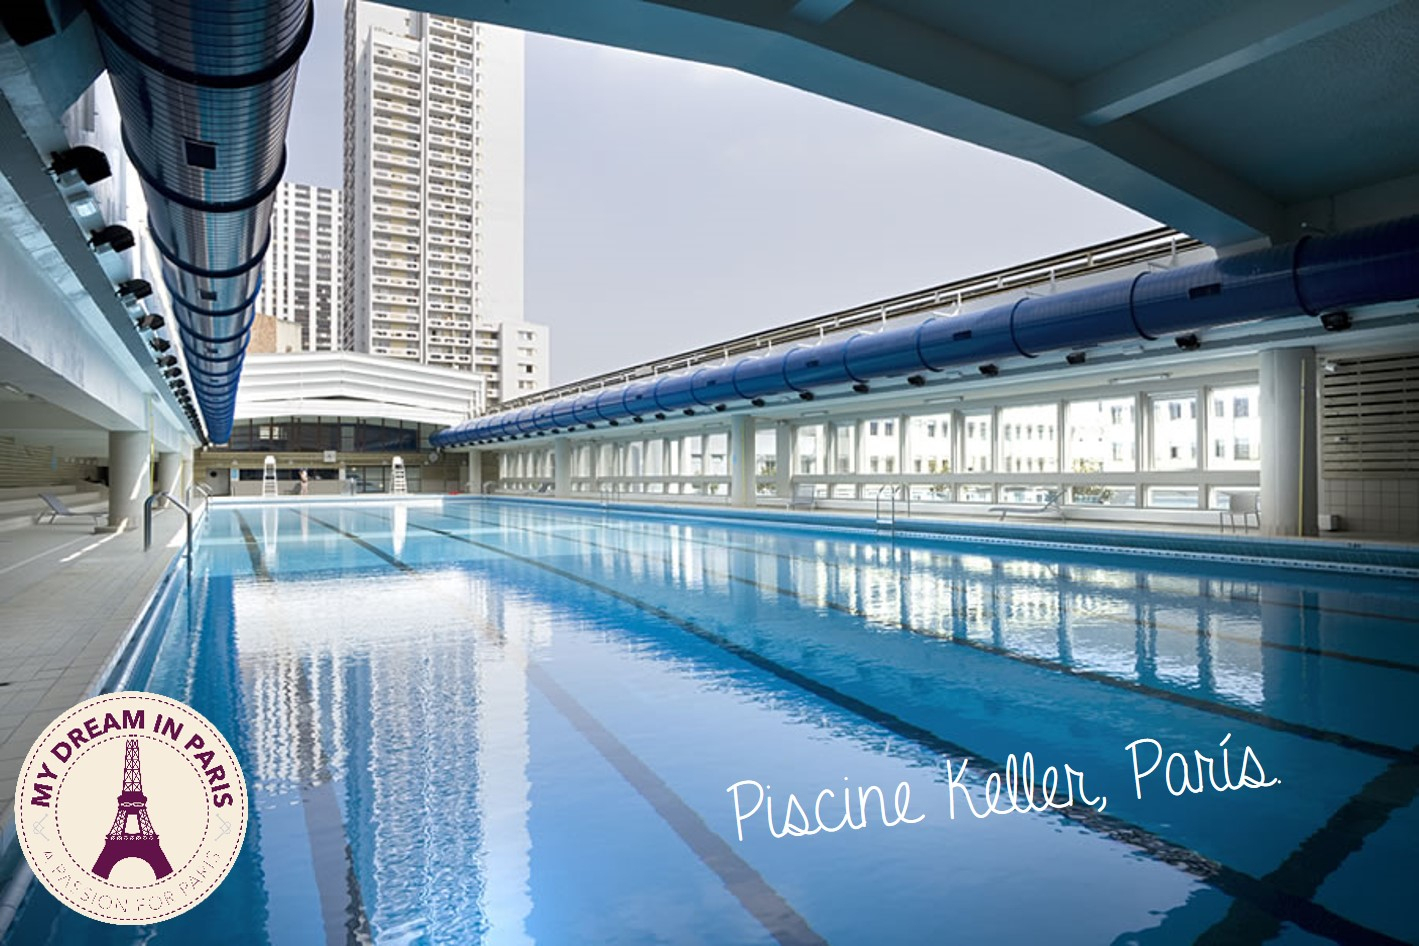 Summer In Paris! Best Swimming Pools To Enjoy This Season ... concernant Piscine Keller Paris